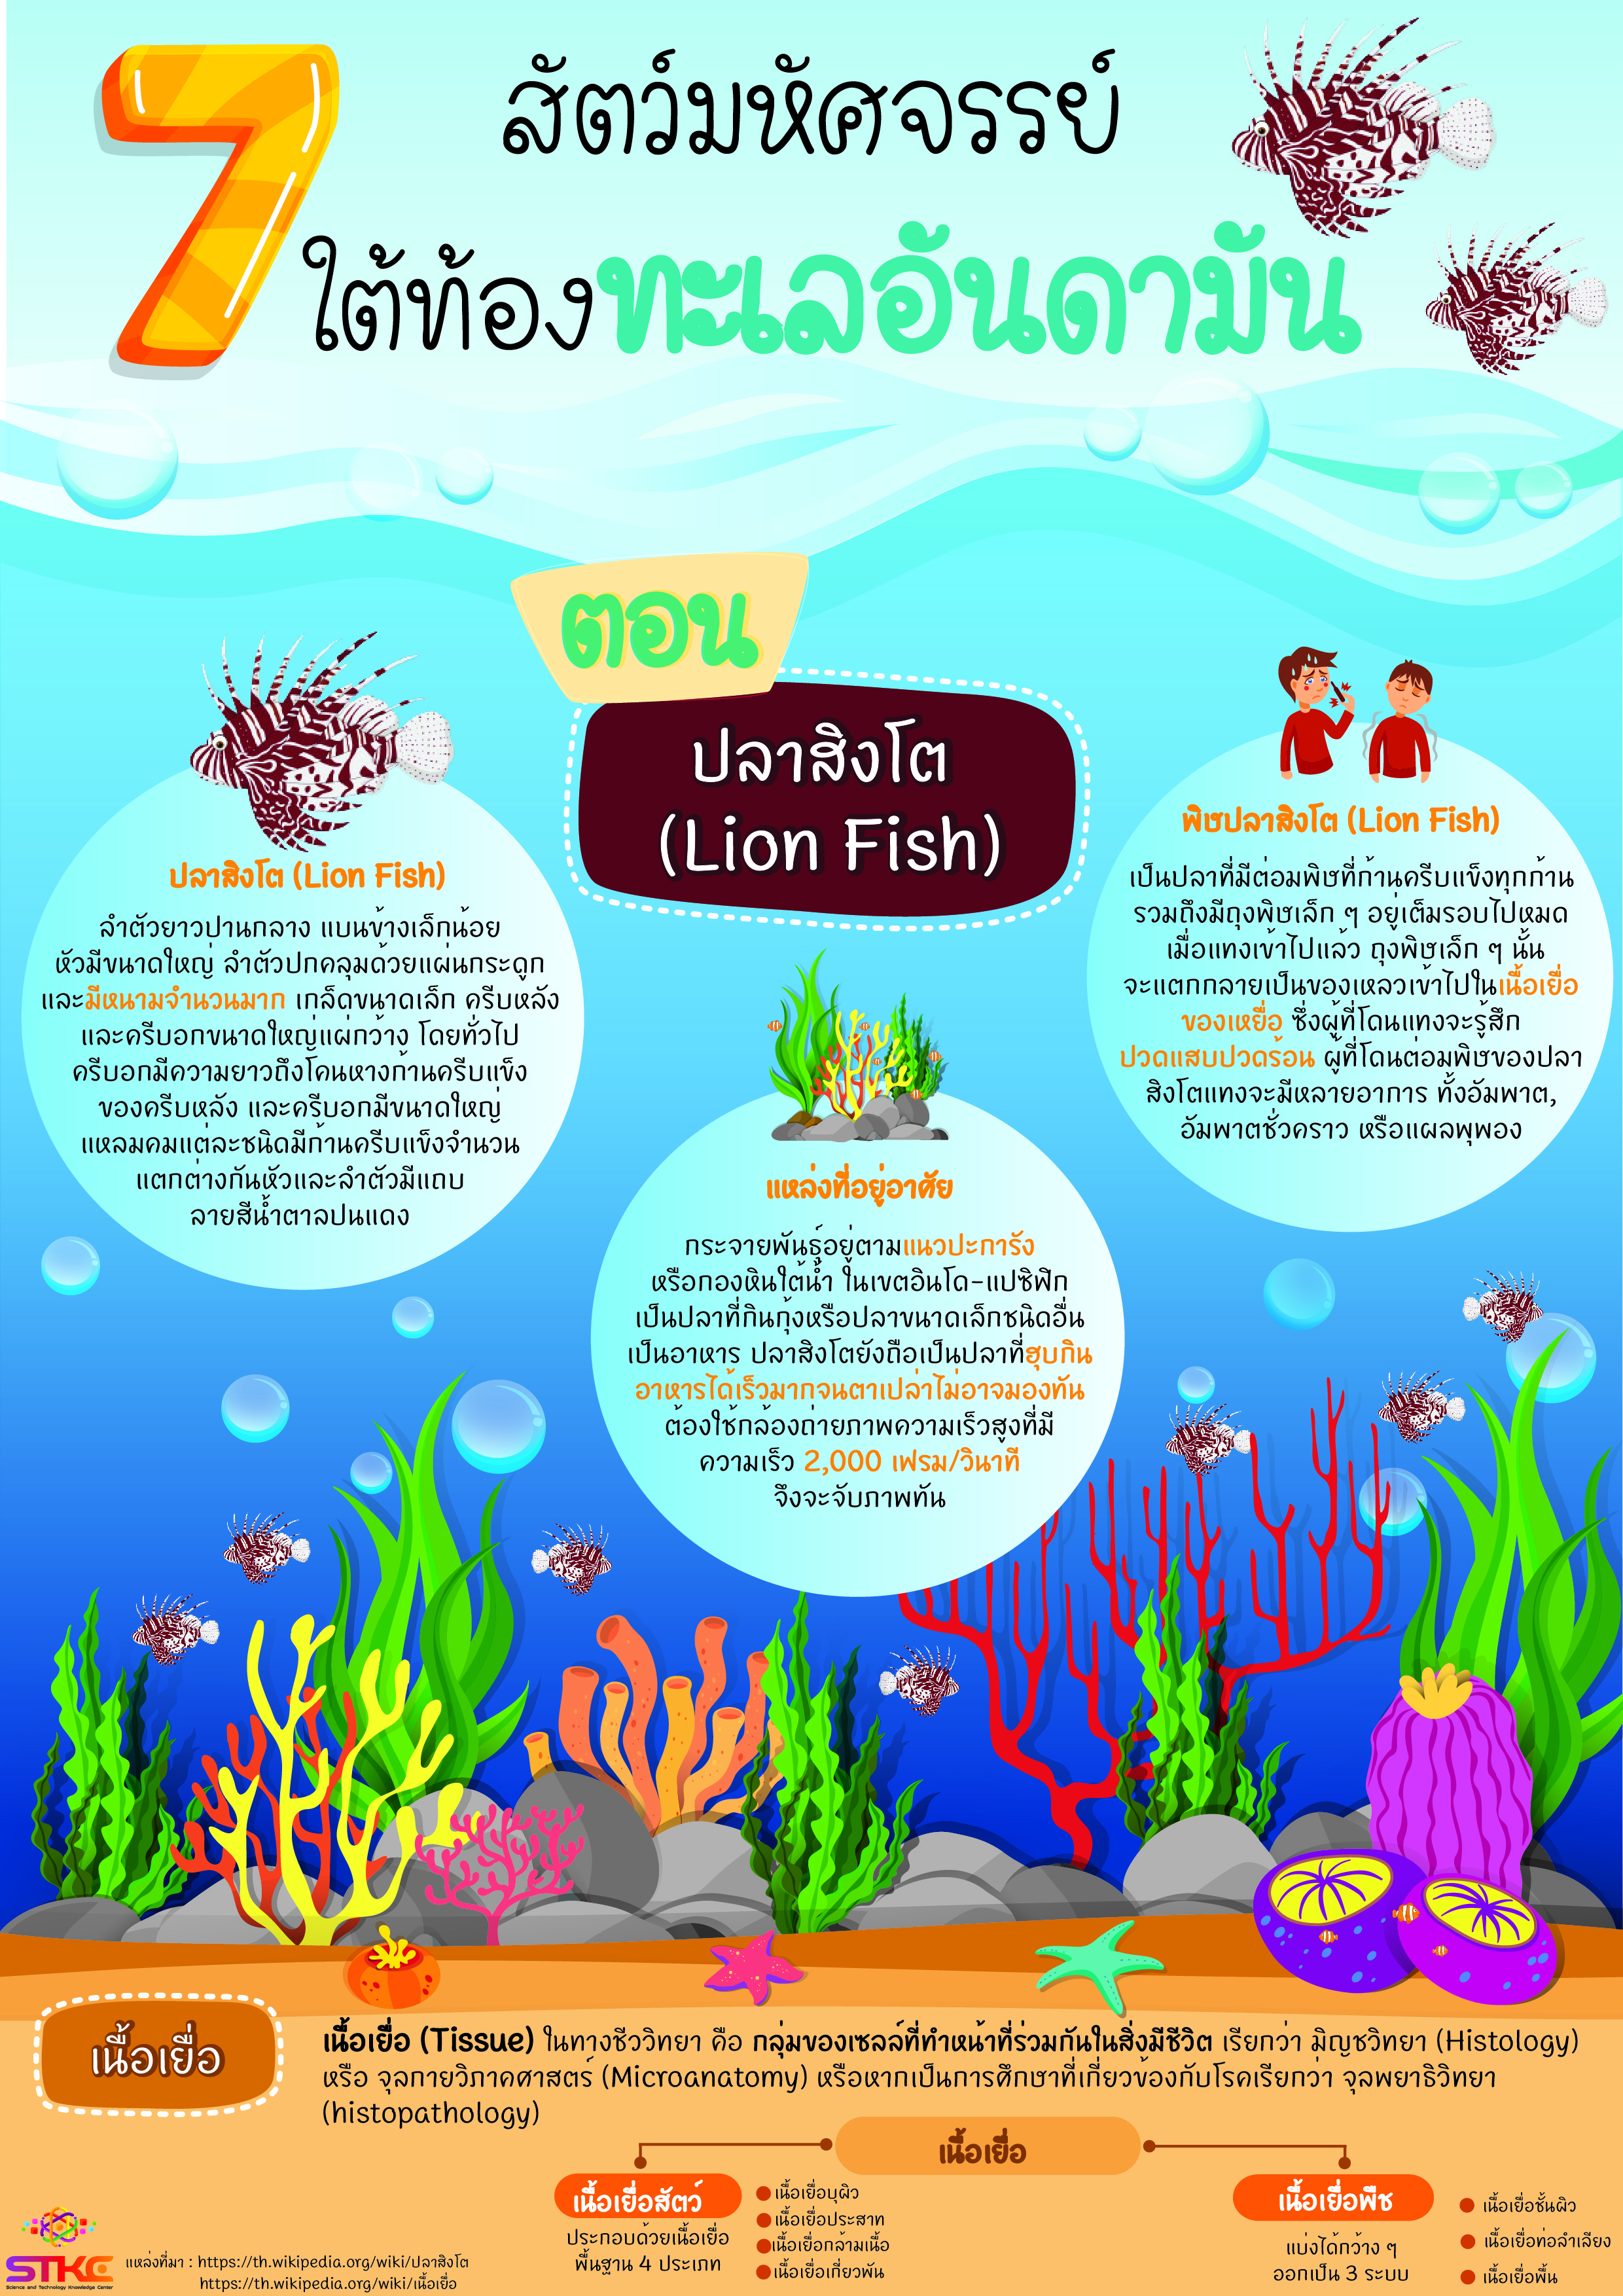 7 สัตว์มหัศจรรย์ ใต้ท้องทะเลอันดามัน ตอน ปลาสิงโต (Lion Fish)